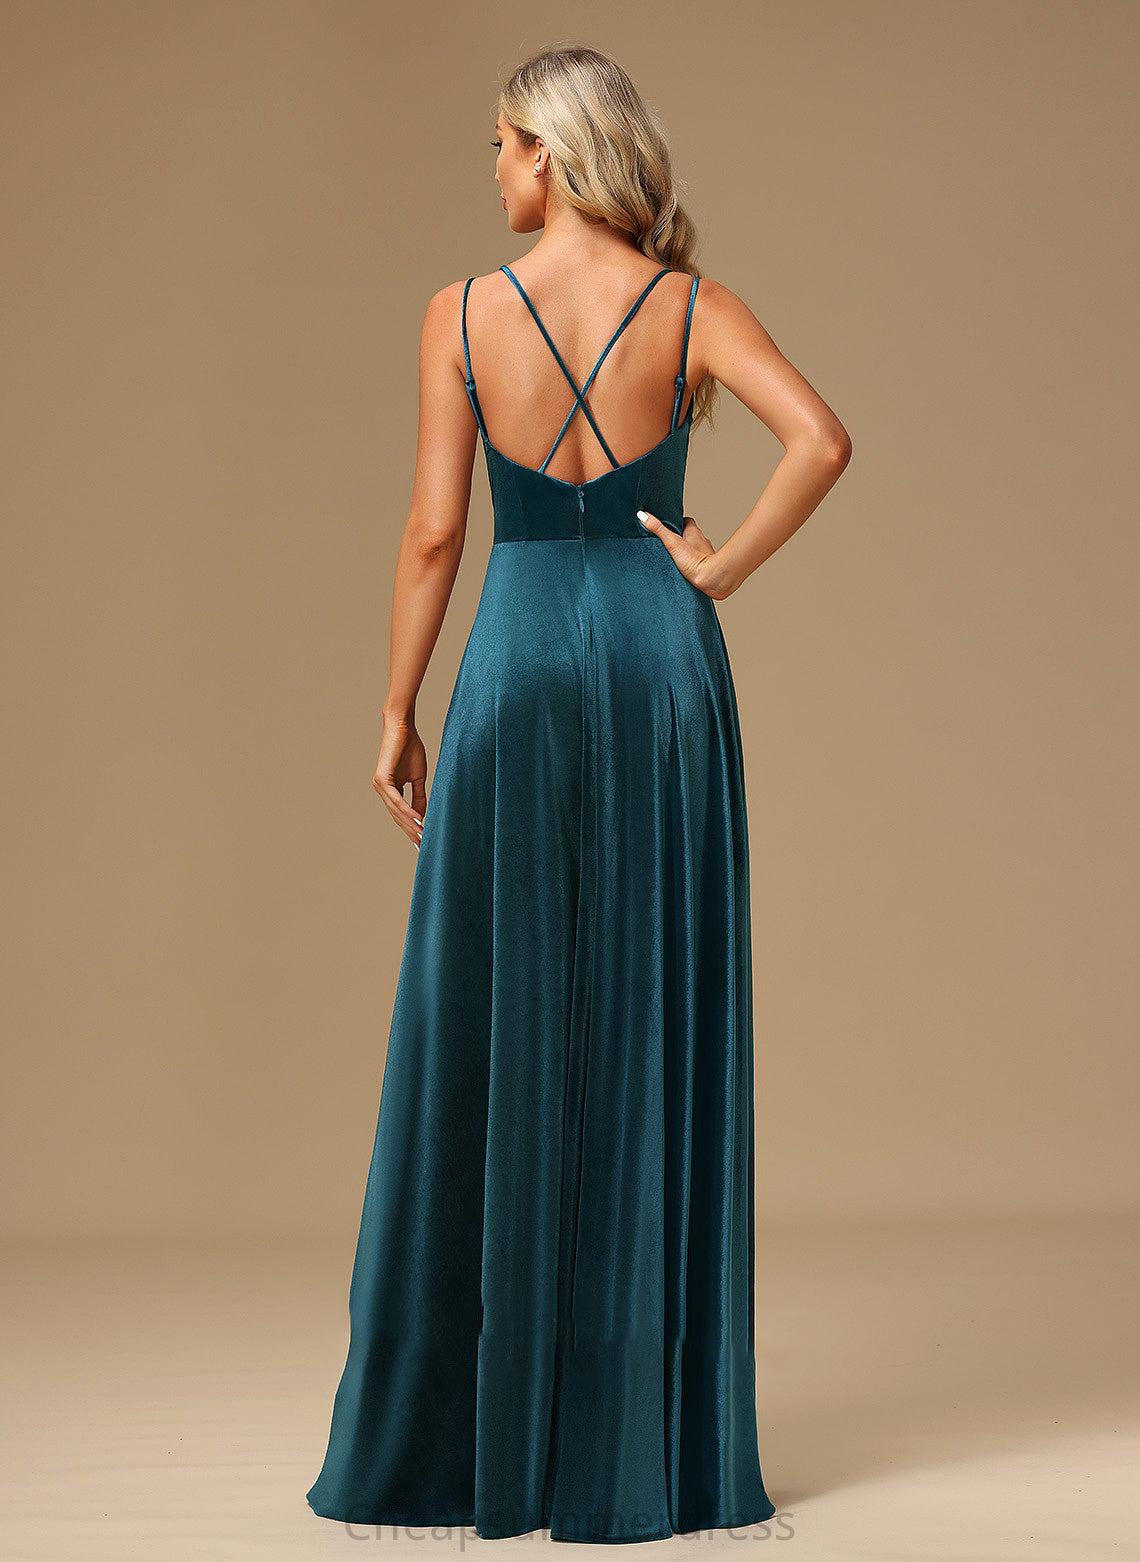 Embellishment Neckline Length Floor-Length SplitFront Fabric Silhouette A-Line V-neck Hadley A-Line/Princess Sleeveless